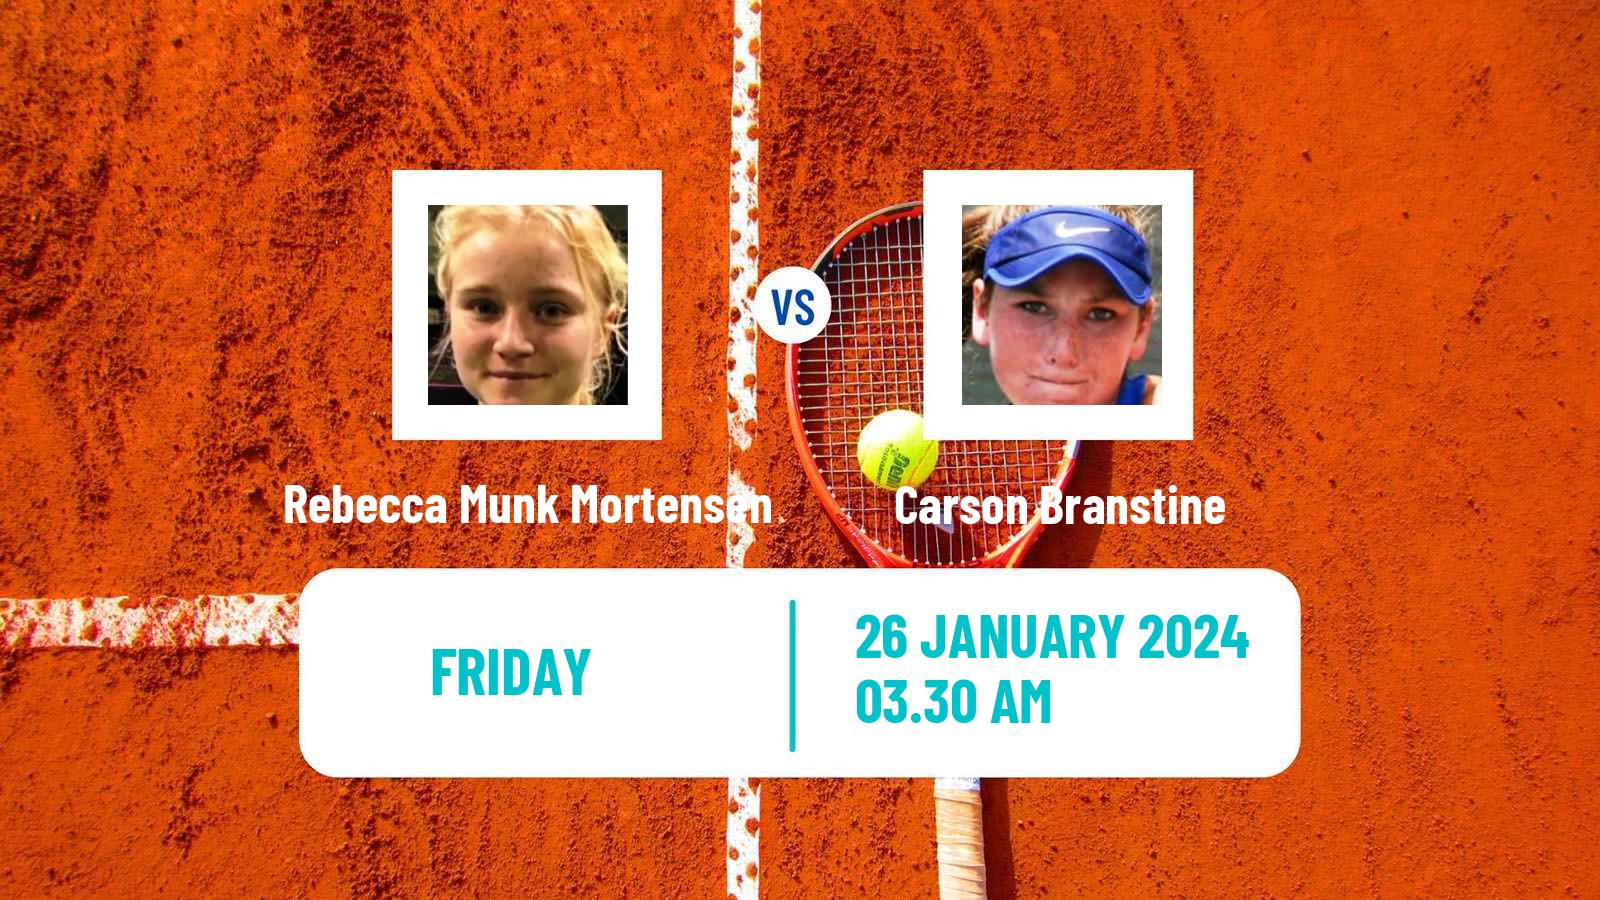 Tennis ITF W35 Monastir 2 Women Rebecca Munk Mortensen - Carson Branstine